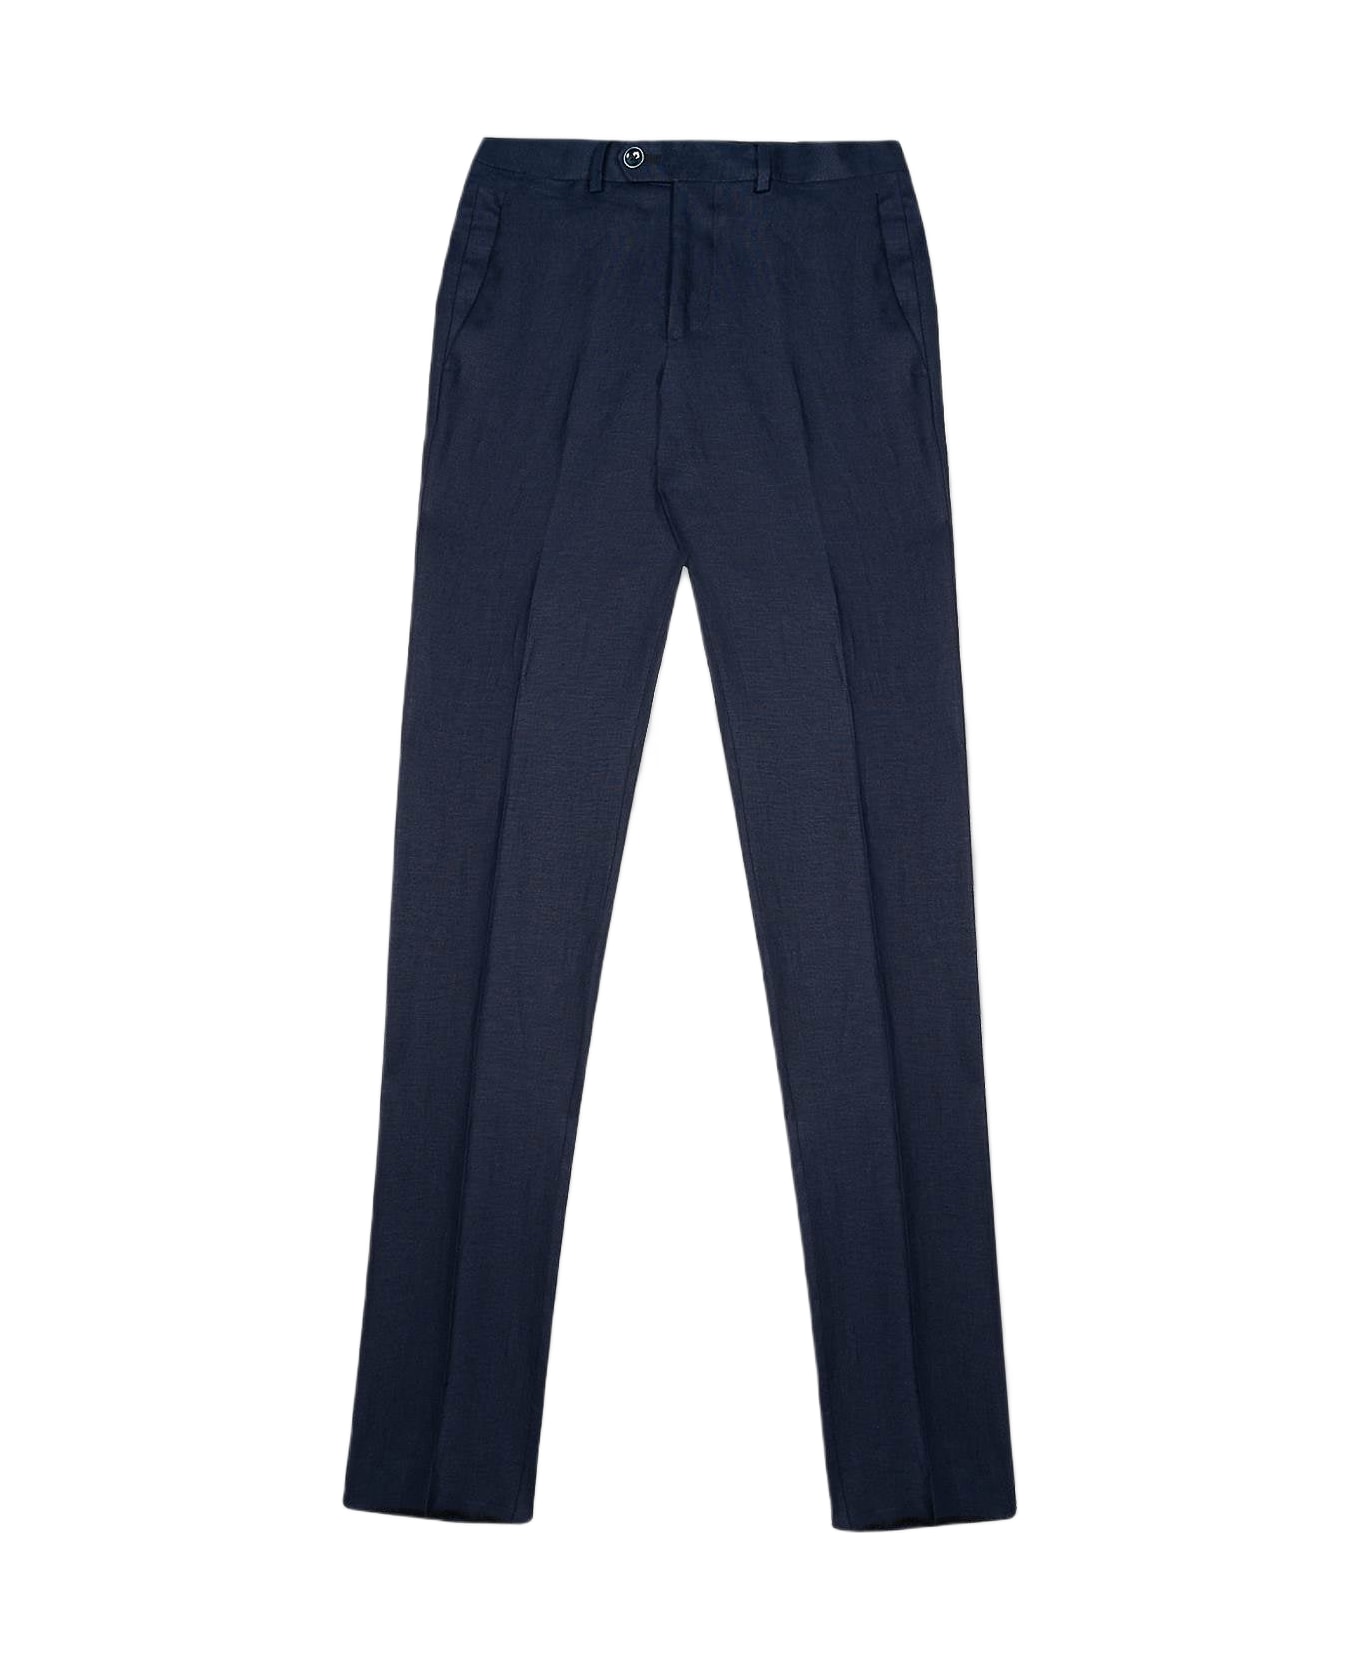 Larusmiani Trousers 'portofino' Pants - Blue